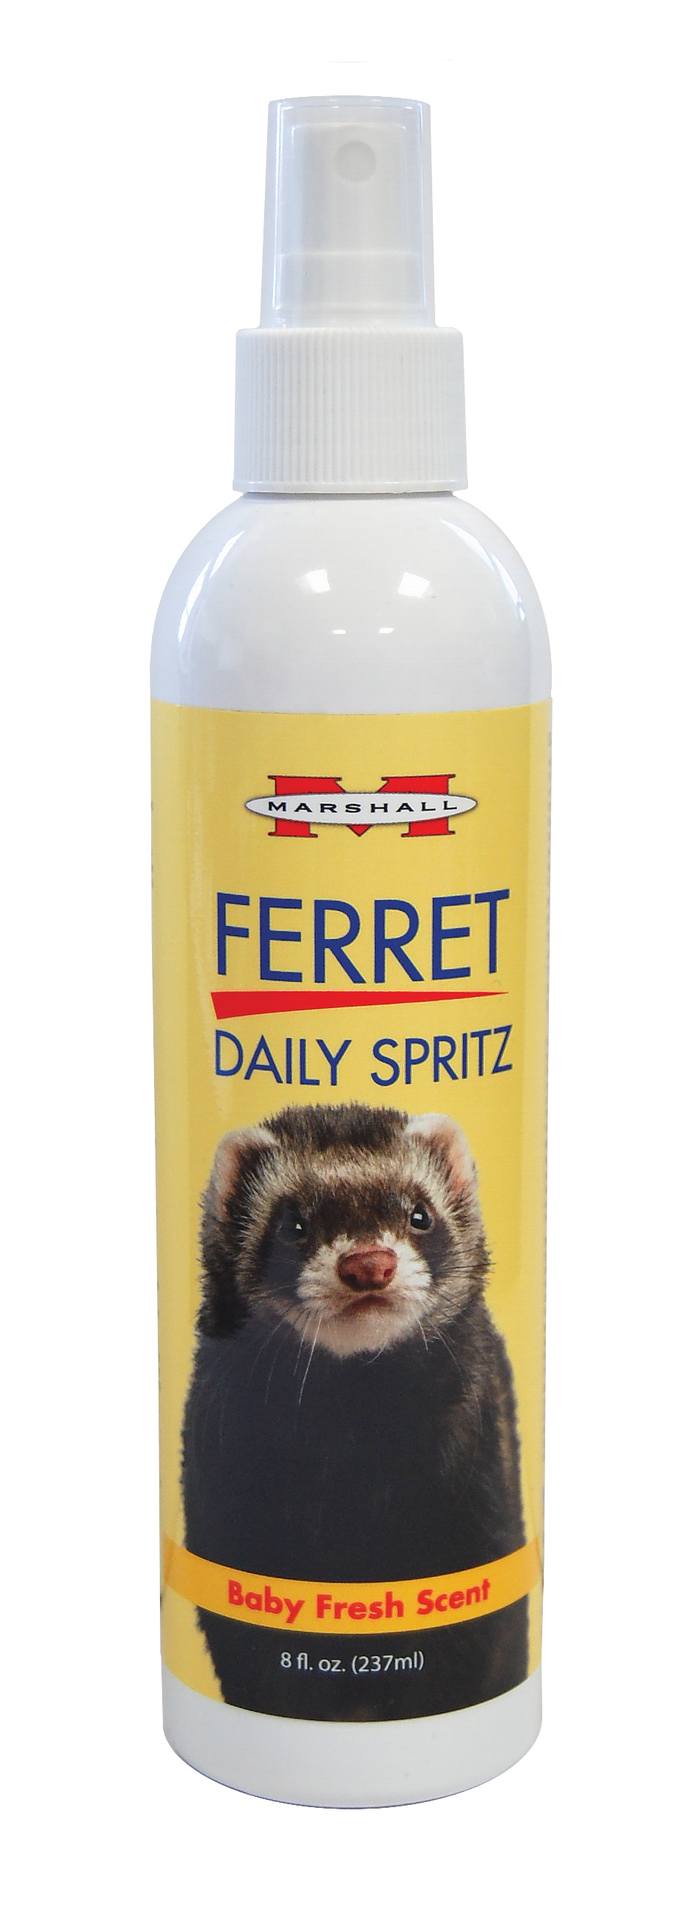 Marshall Ferret Daily Spritz